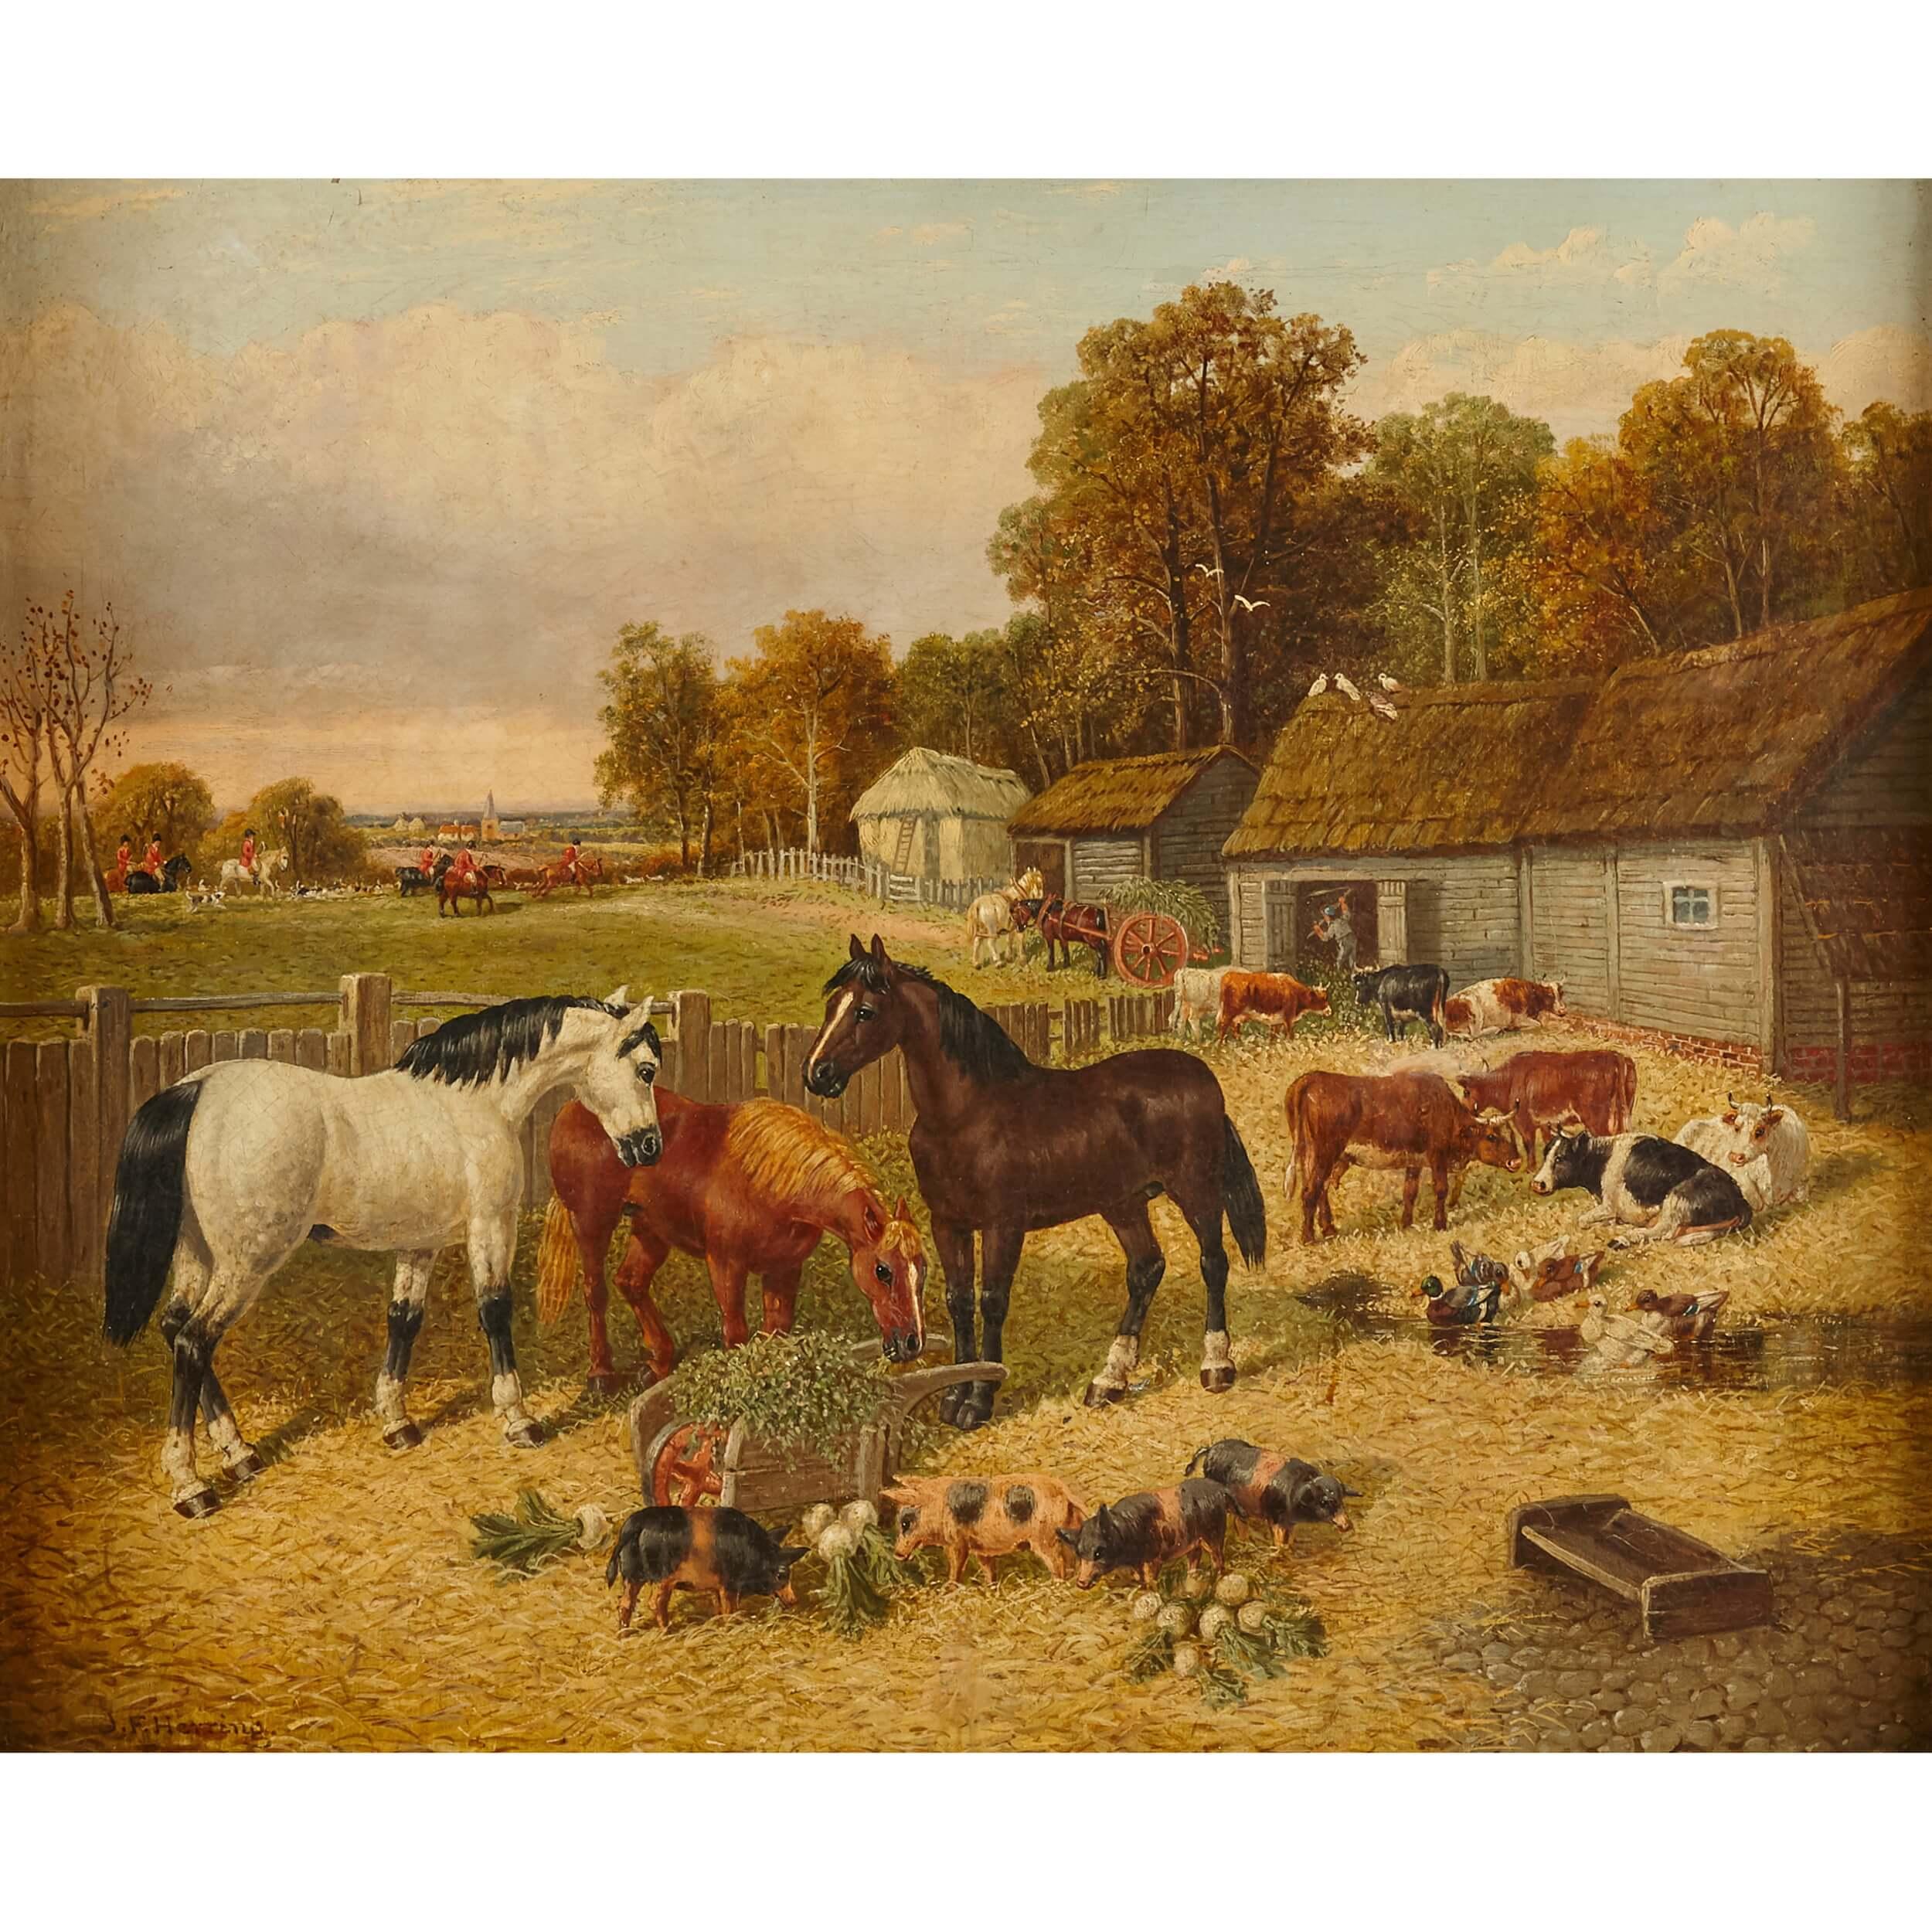 Gemälde von Pferden und Tieren aus dem Landhausstil von Herring the Younger – Painting von John Frederick Herring Jr.